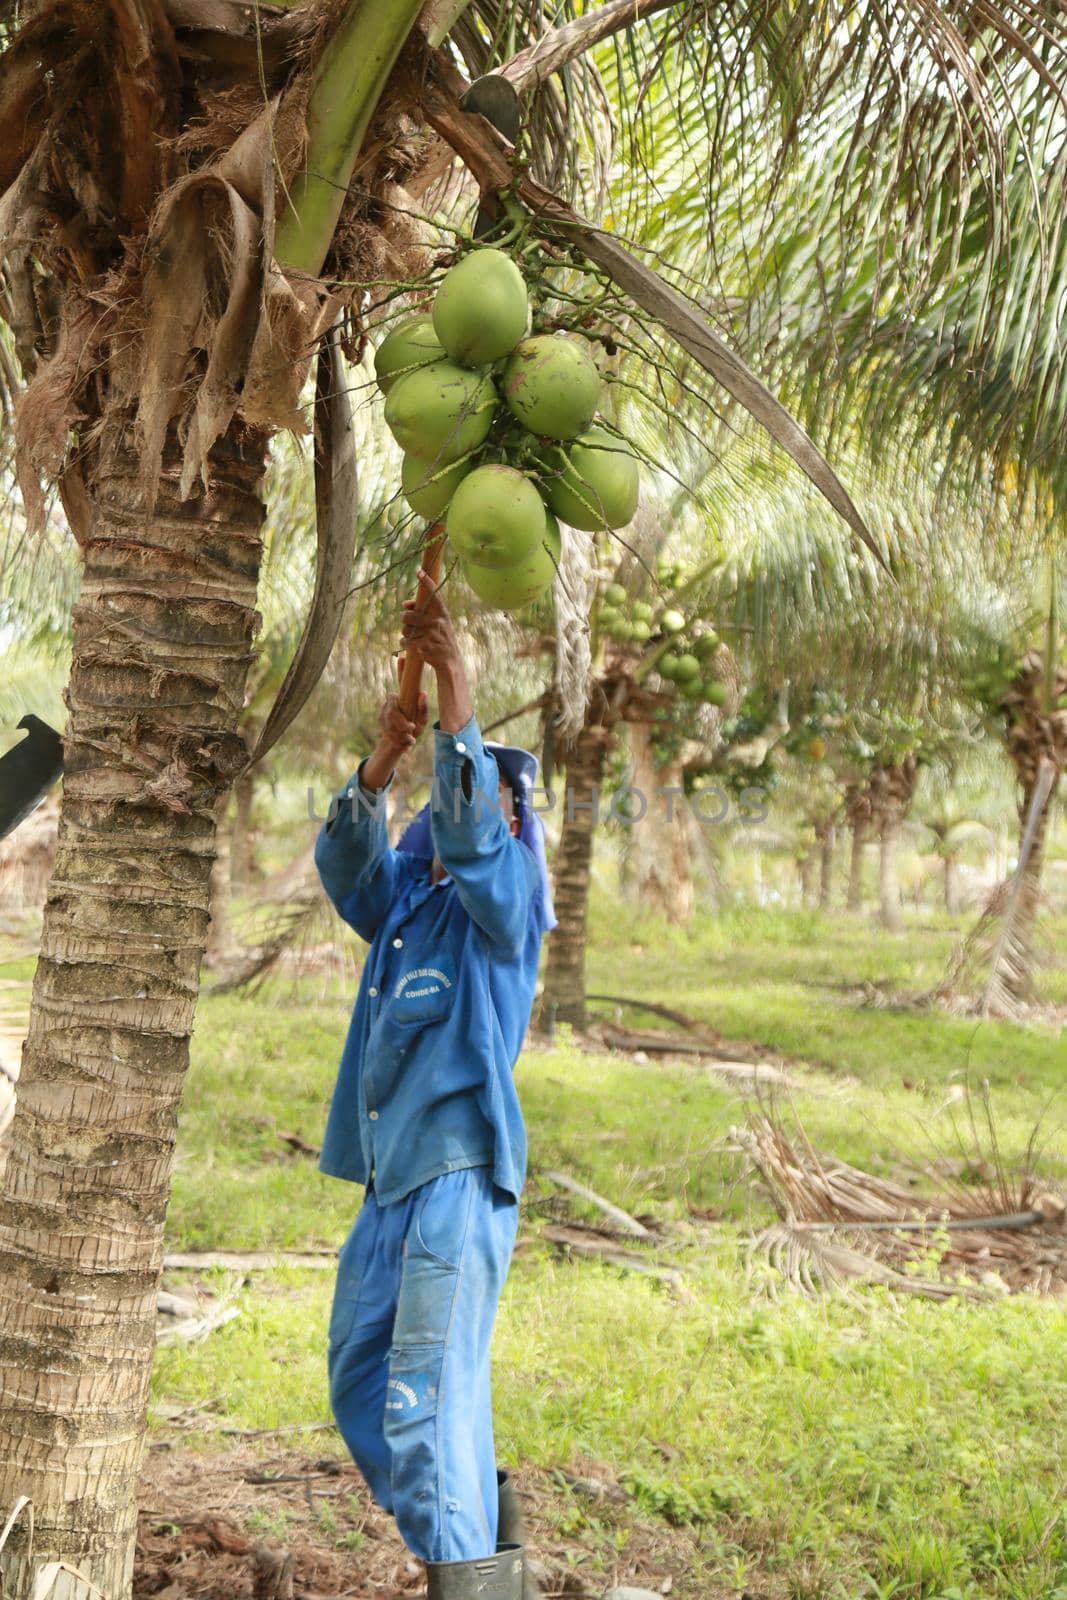 coconut harvest in bahia by joasouza